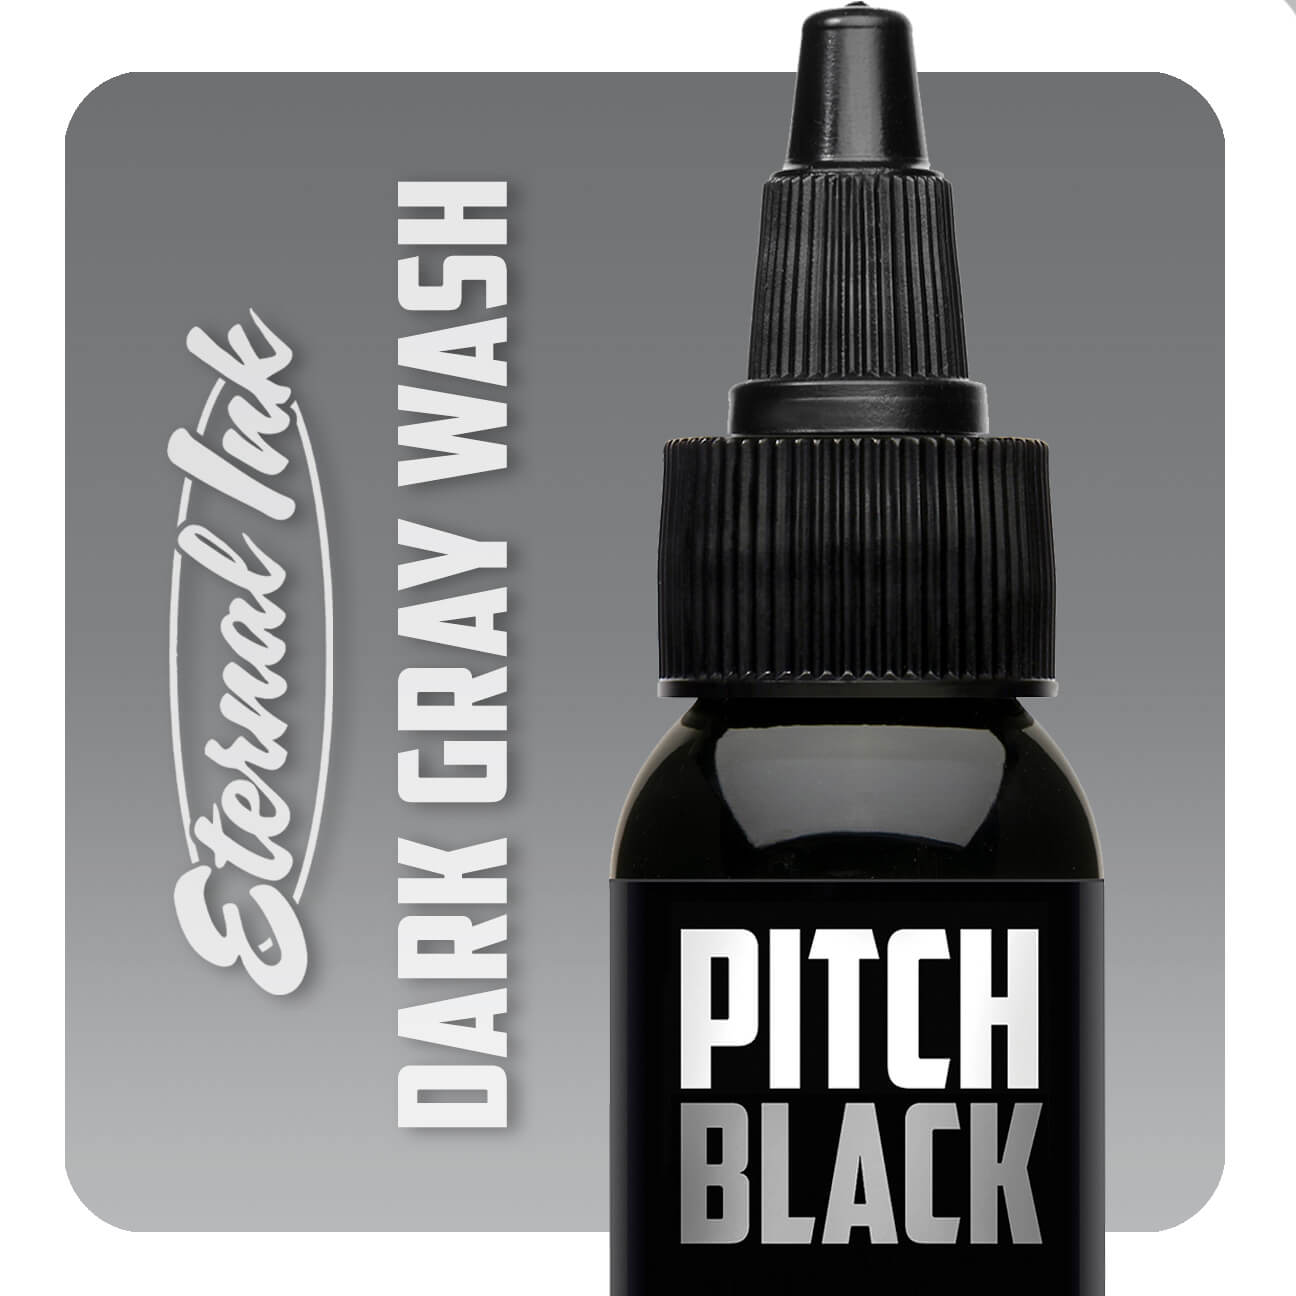 Eternal Ink - Pitch Black - Gray Wash Dark